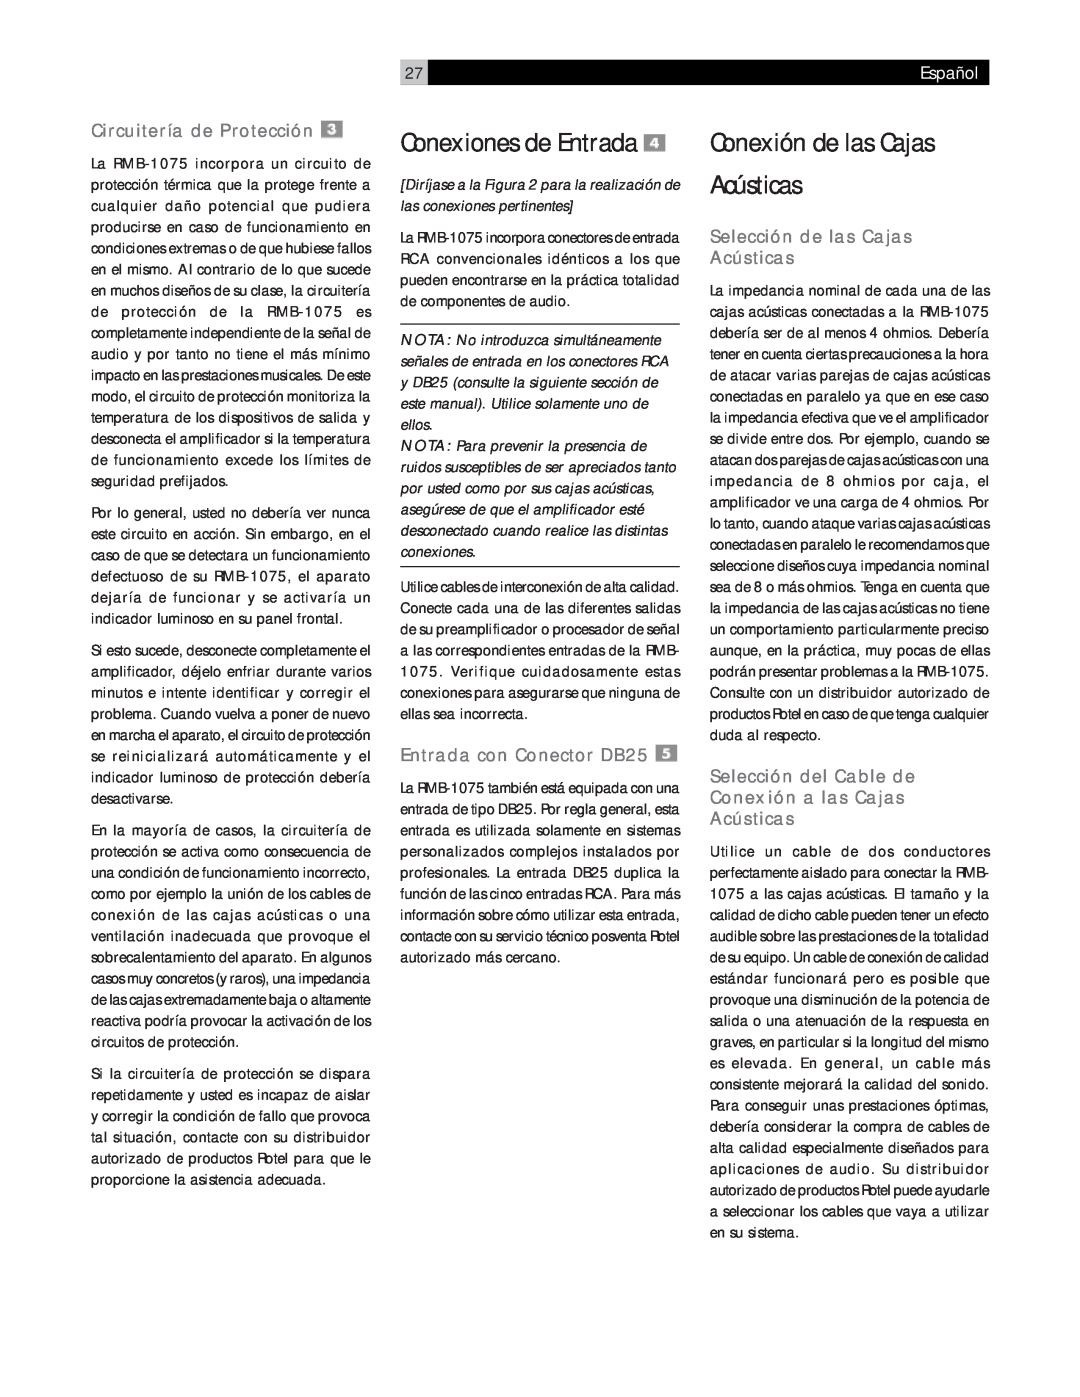 Rotel RMB-1075 owner manual Conexión de las Cajas Acústicas, Conexiones de Entrada, Circuitería de Protección, Español 